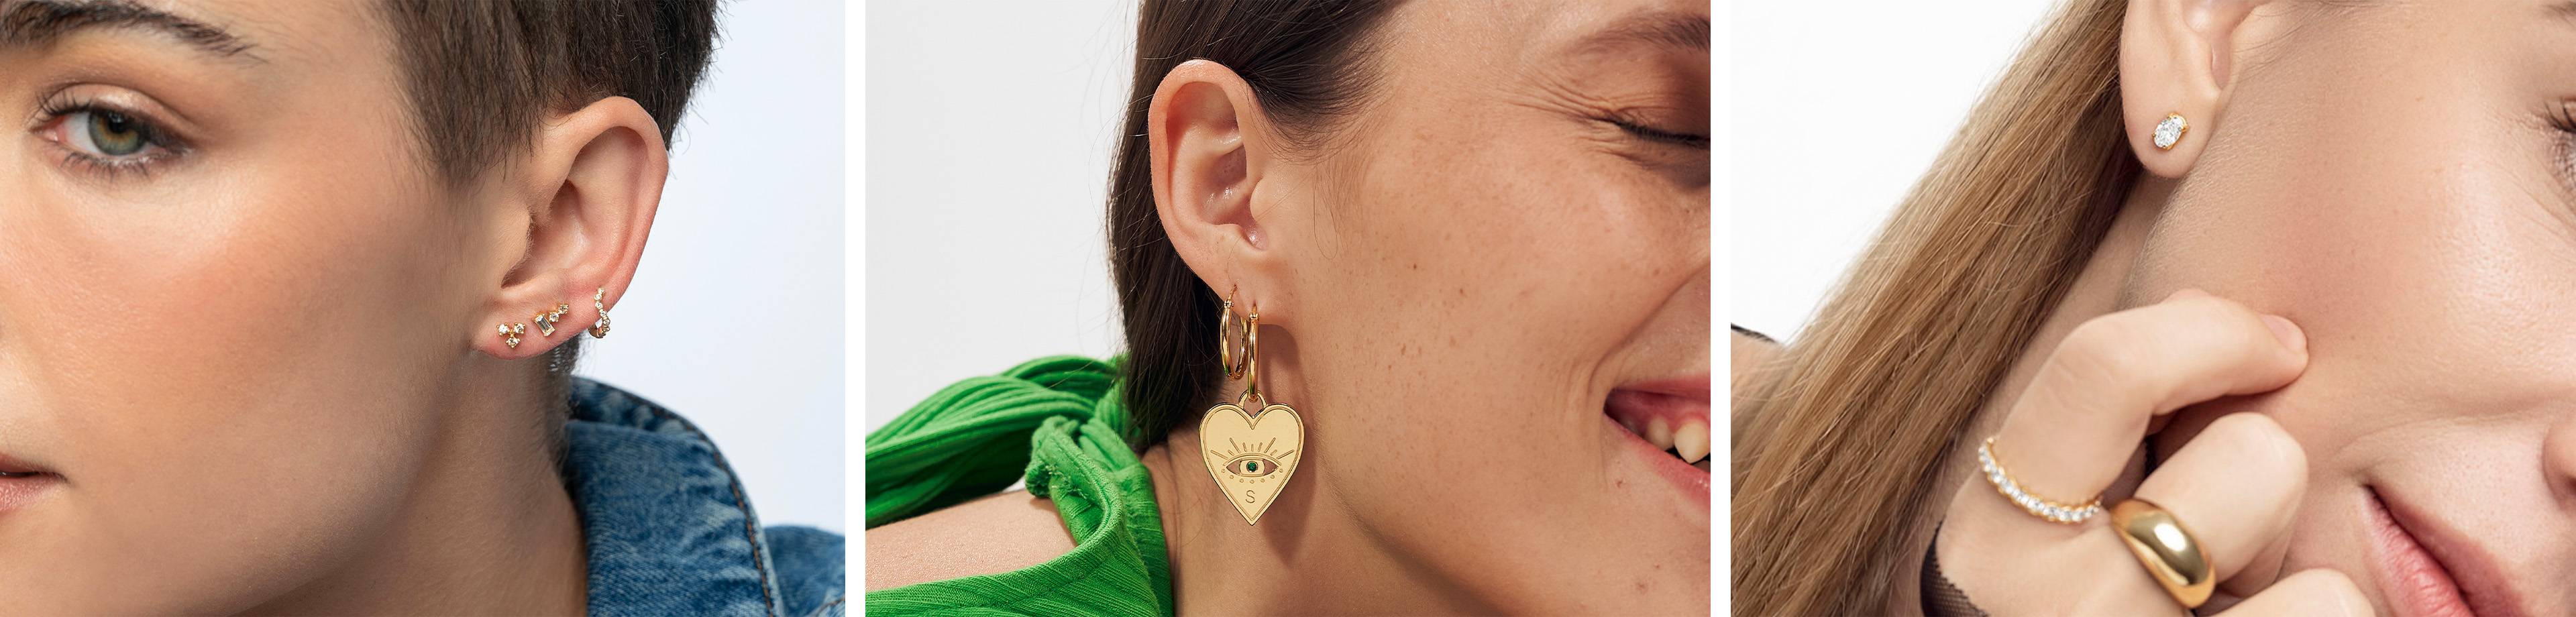 Women’s earrings